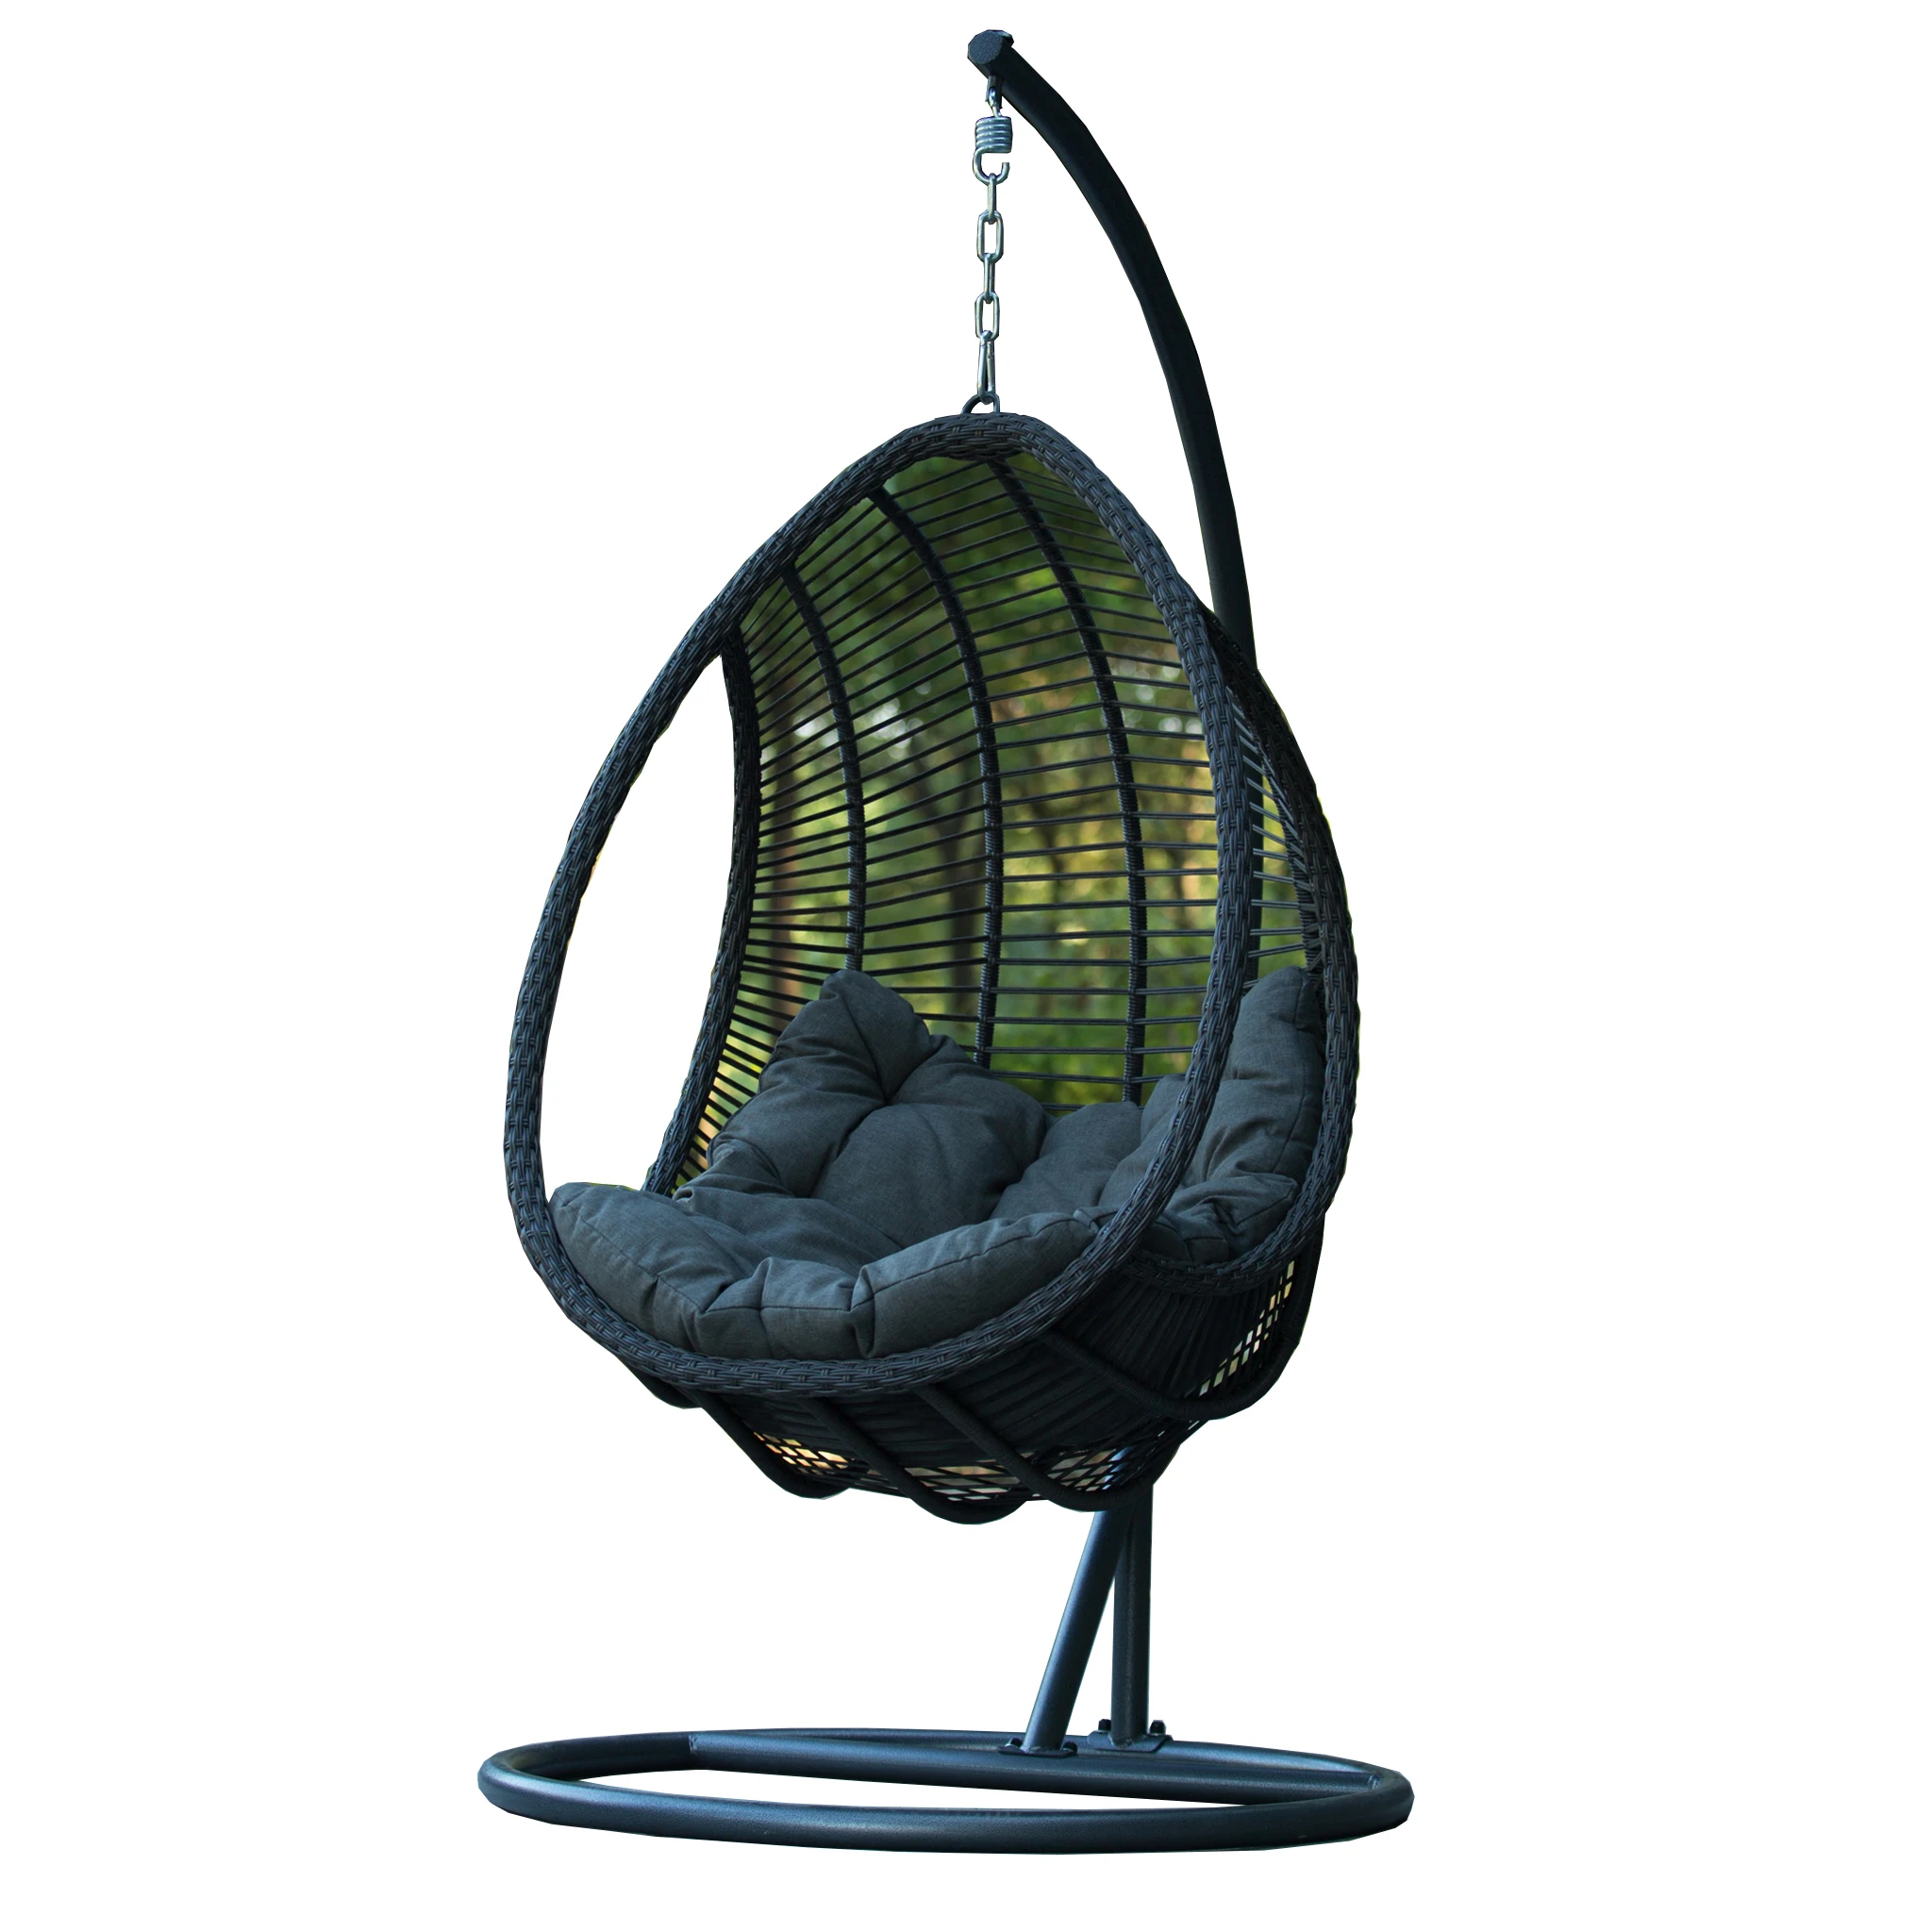 Rattan Patio Indoor Outdoor Wicker Hanging Swing Swing Chair